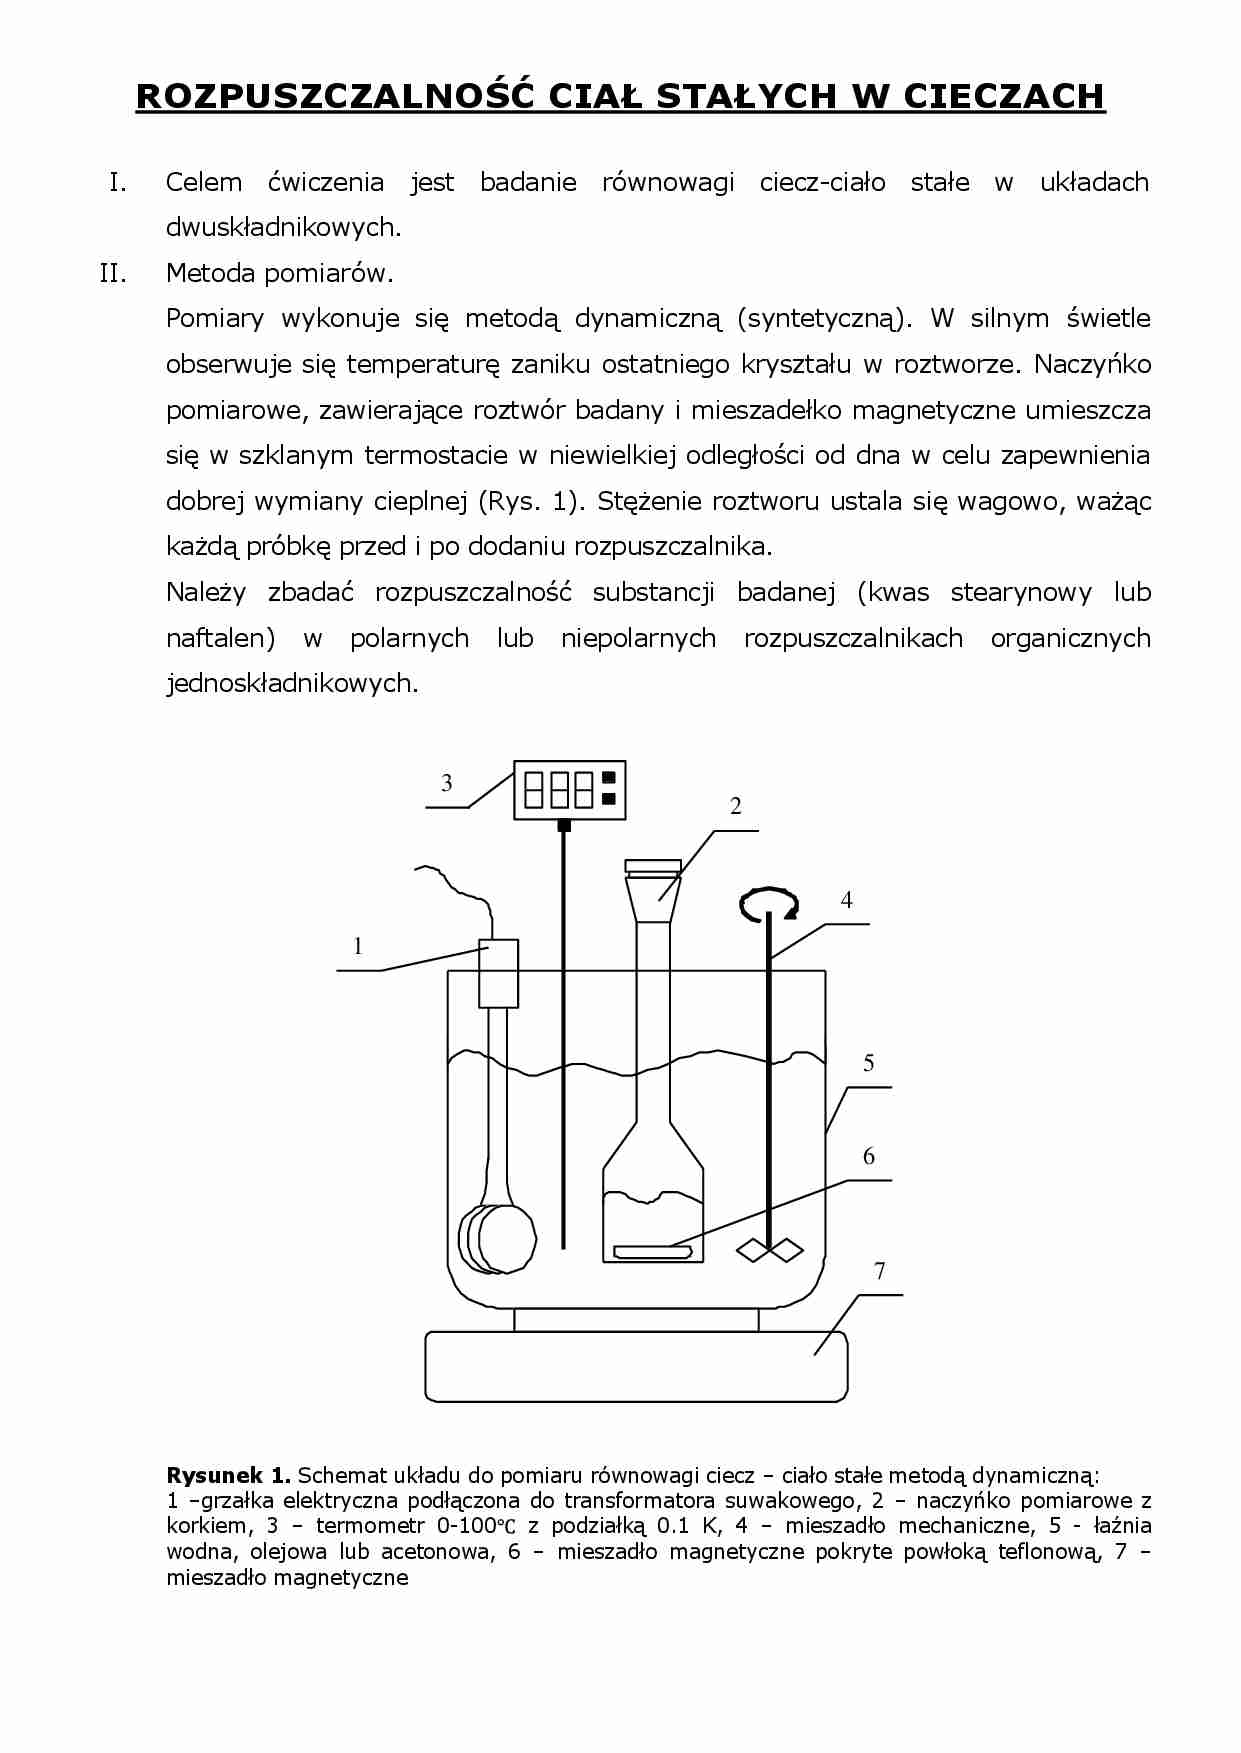 Rozpuszczalność ciał stałych w cieczach - Metody pomiarów - strona 1